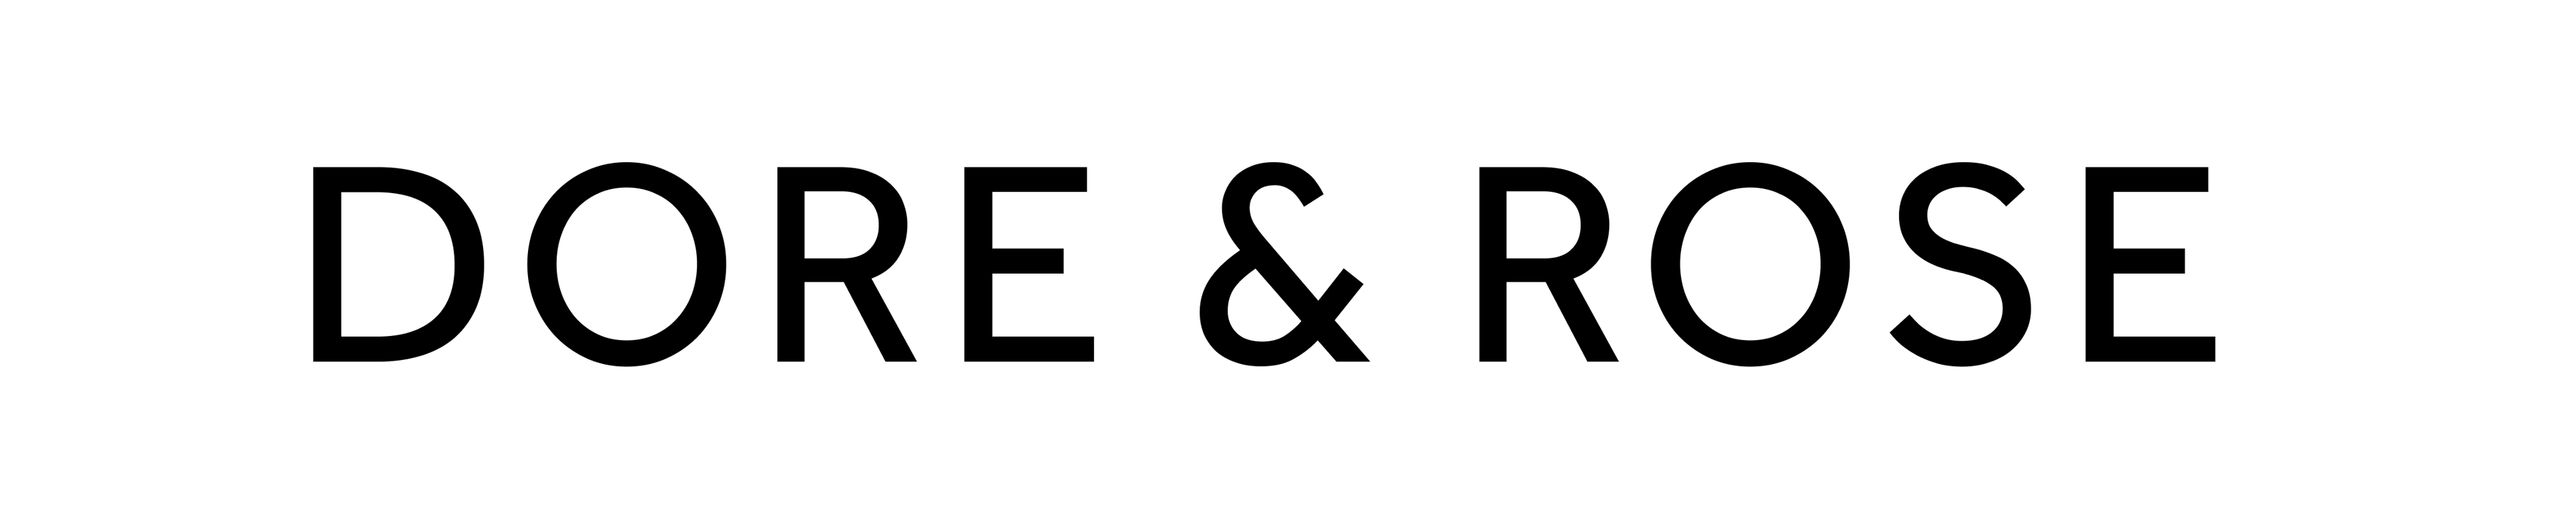 DORE & ROSE (Copy) logo